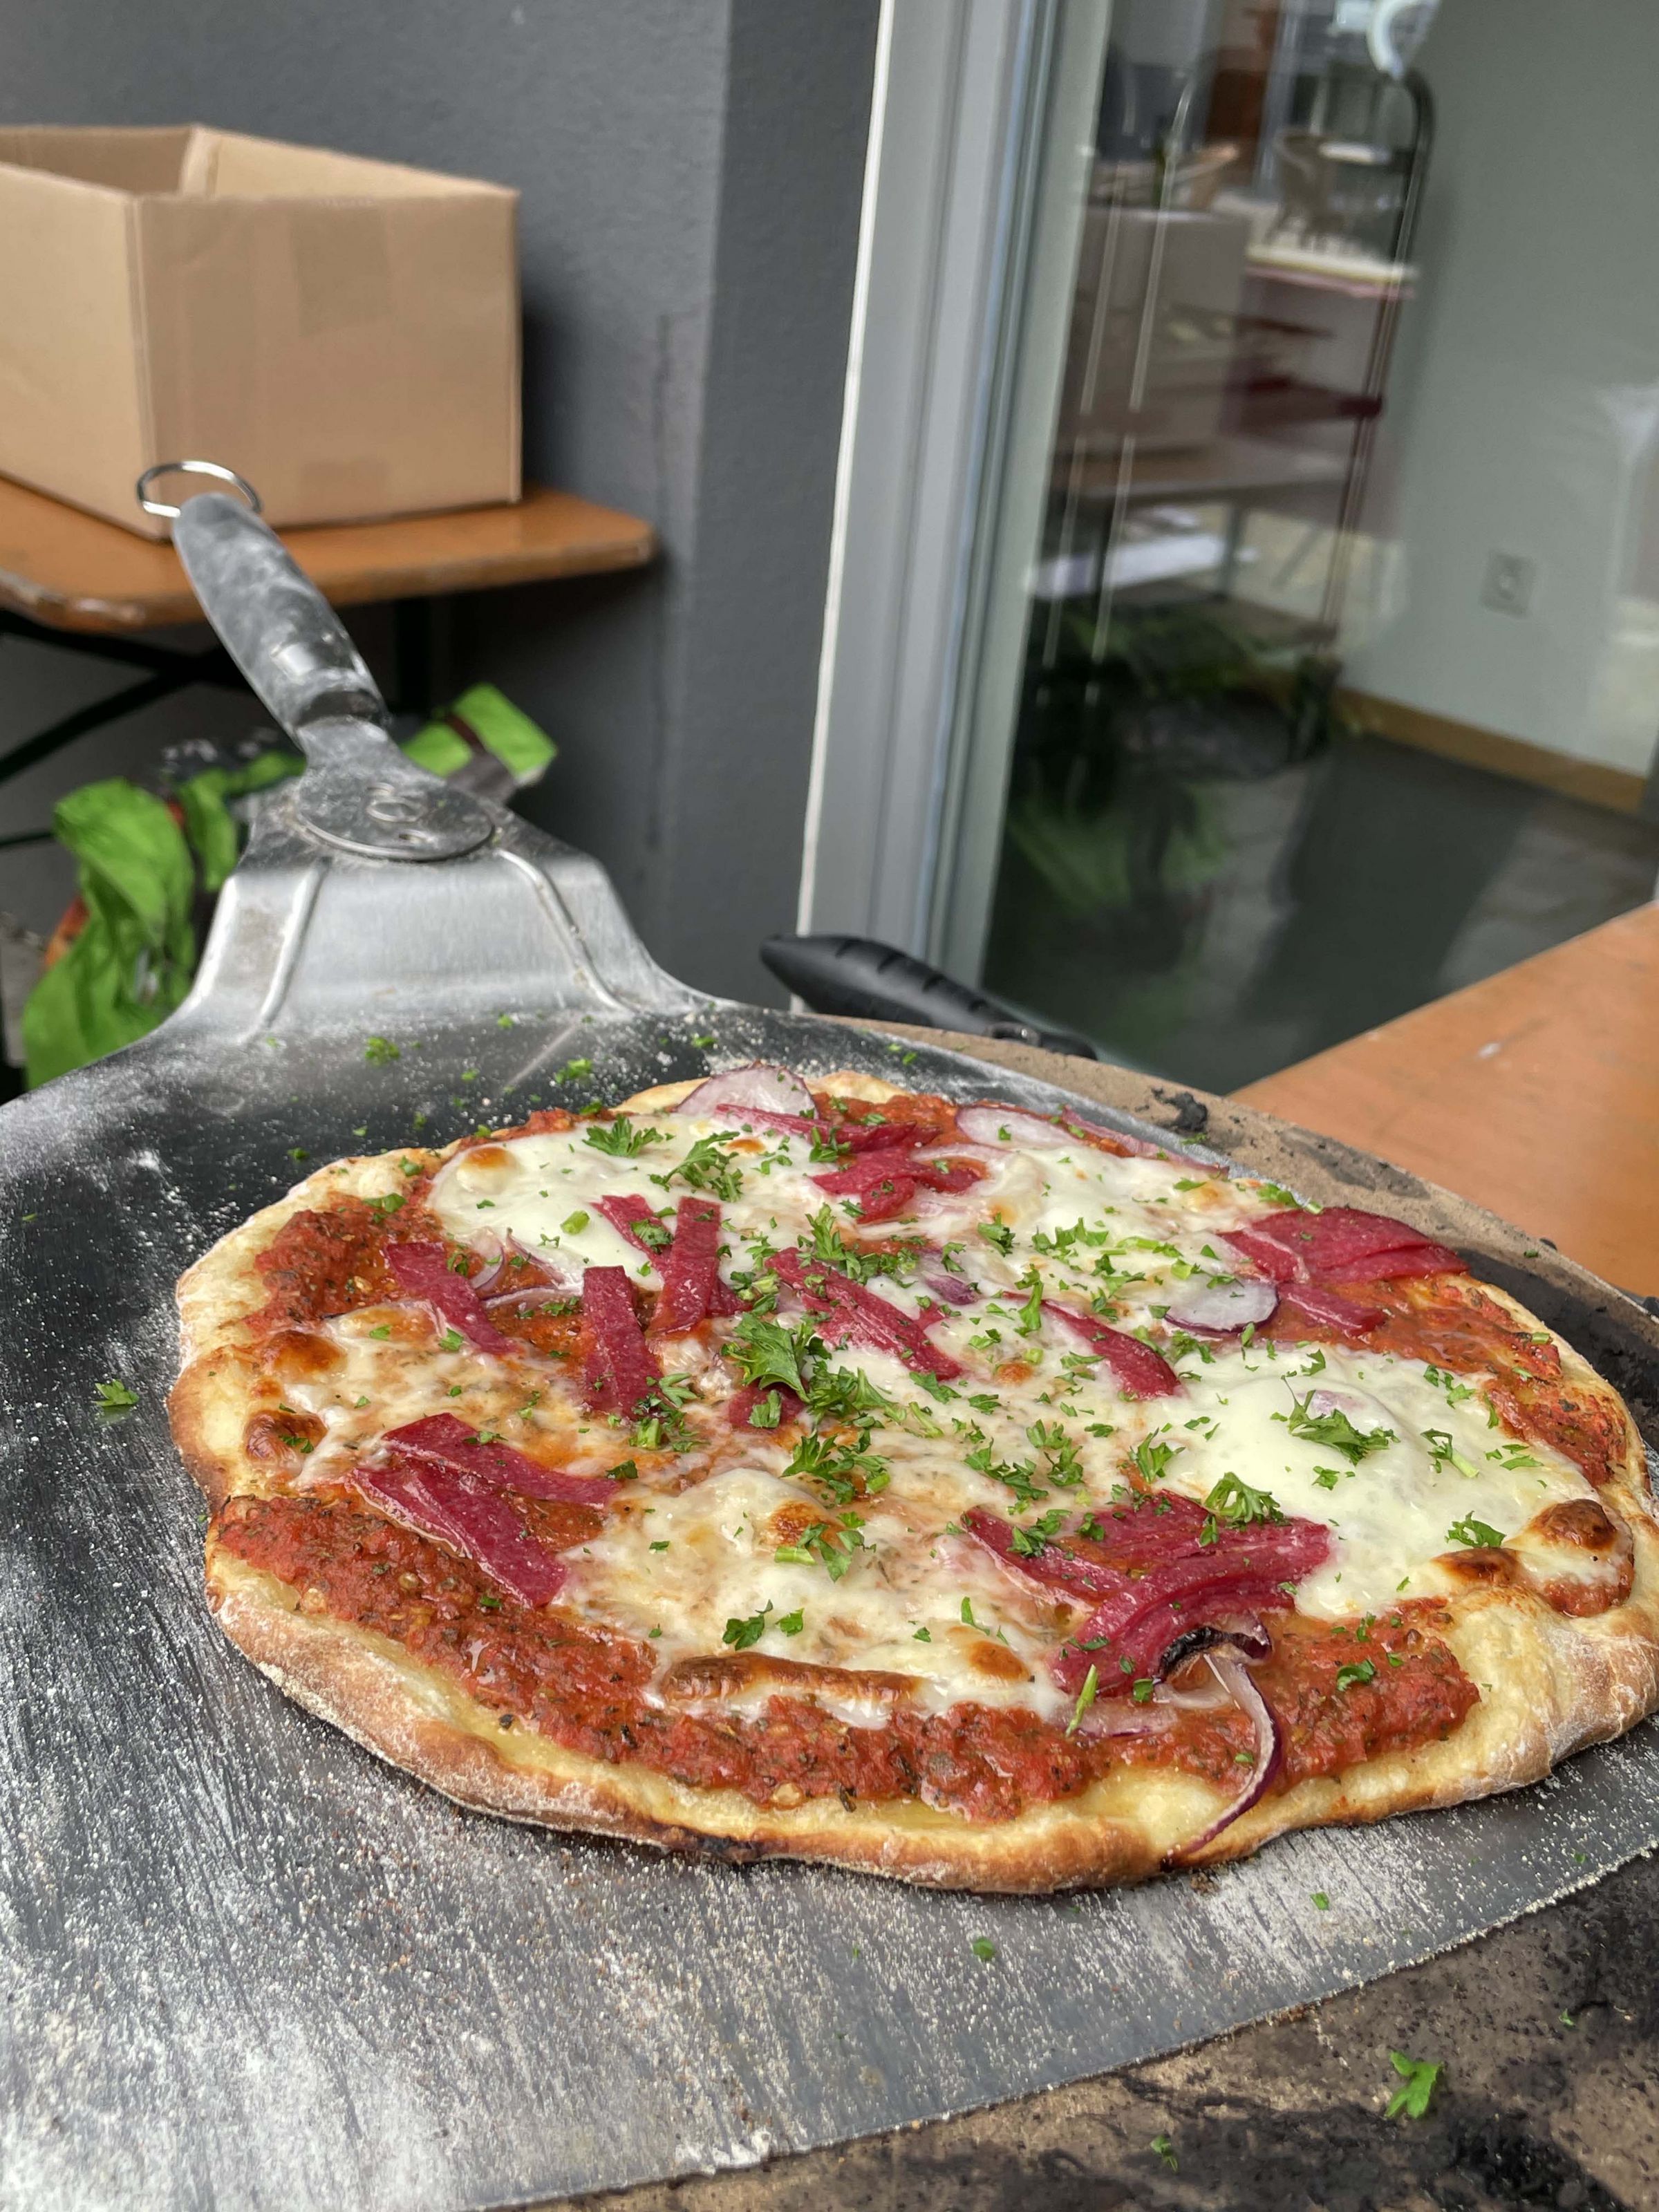 Eine selbstgebackene Pizza Magharita ist auf einem silbernen Pizzaheber zu sehen. Sie sieht warm und lecker aus.